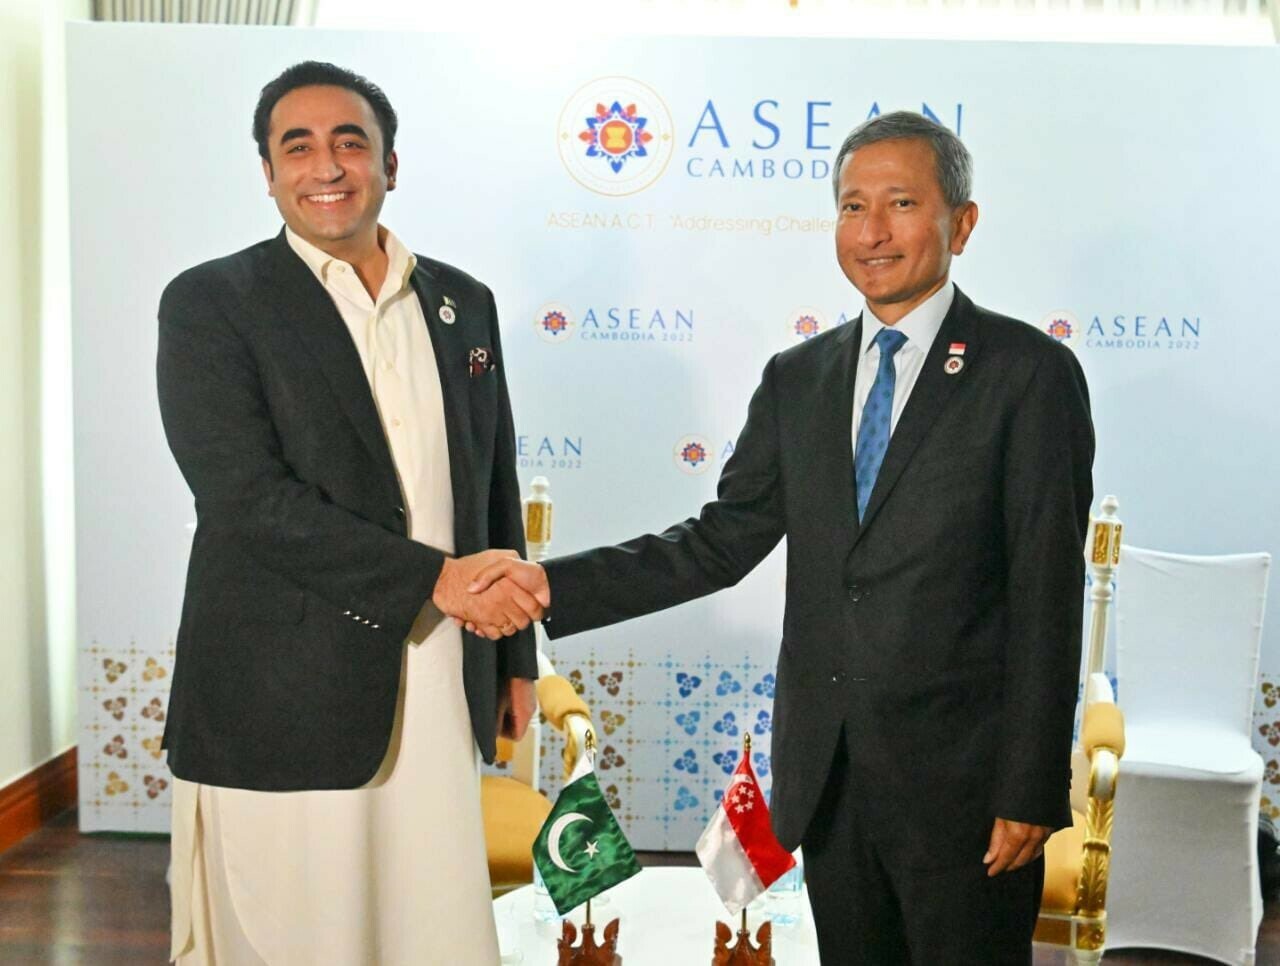 hai bộ trưởng đã gặp nhau trong khuôn khổ Hội nghị Bộ trưởng Diễn đàn Khu vực ASEAN (ARF) lần thứ 29 tại Phnom Penh, Campuchia và xem xét thực trạng quan hệ song phương Pakistan-Singapore.